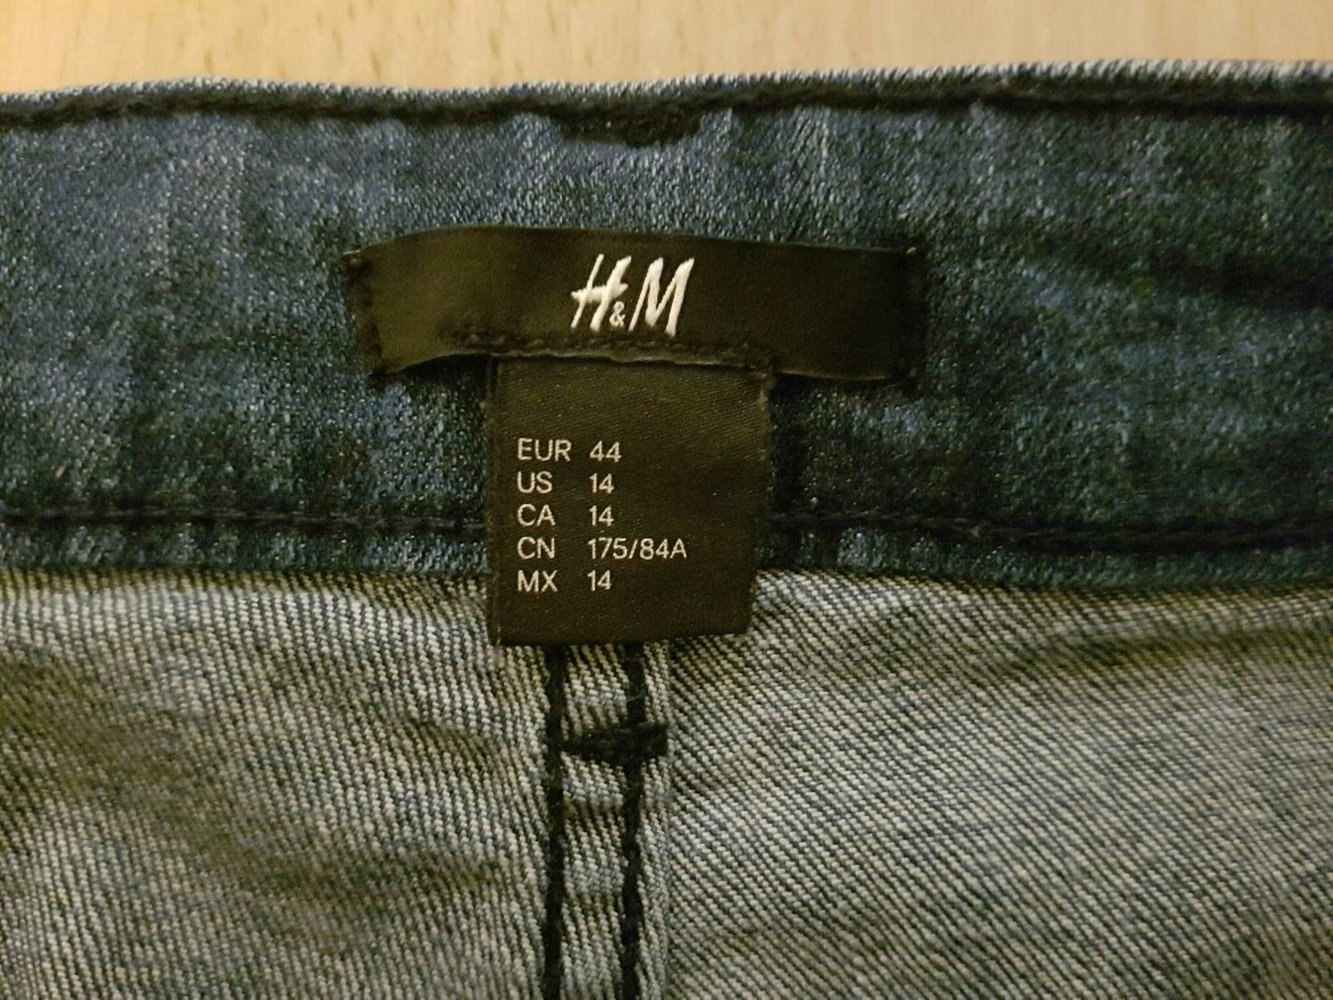 Schicke Jeans von H&M, Schlaghose, weiter Beinschnitt, Damen, dunkelblau, Grösse 42